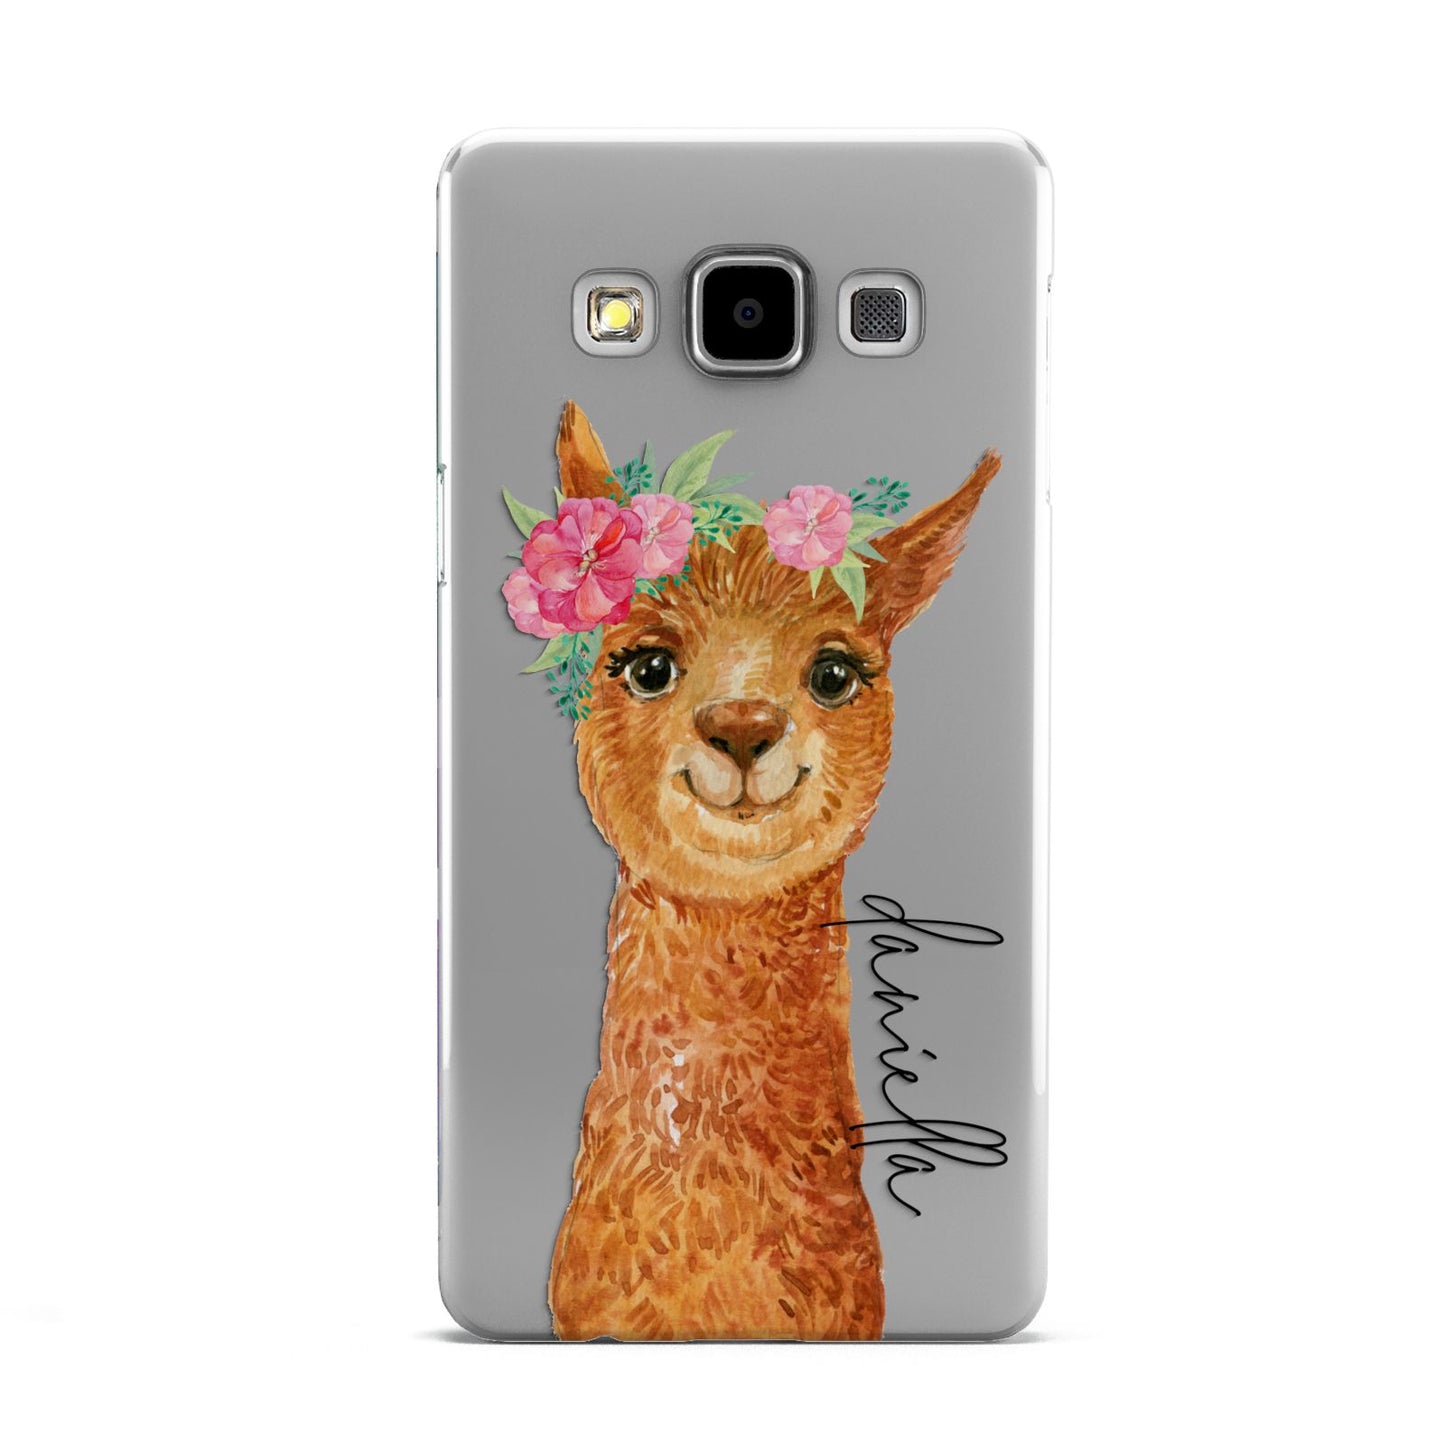 Personalised Llama Samsung Galaxy A5 Case